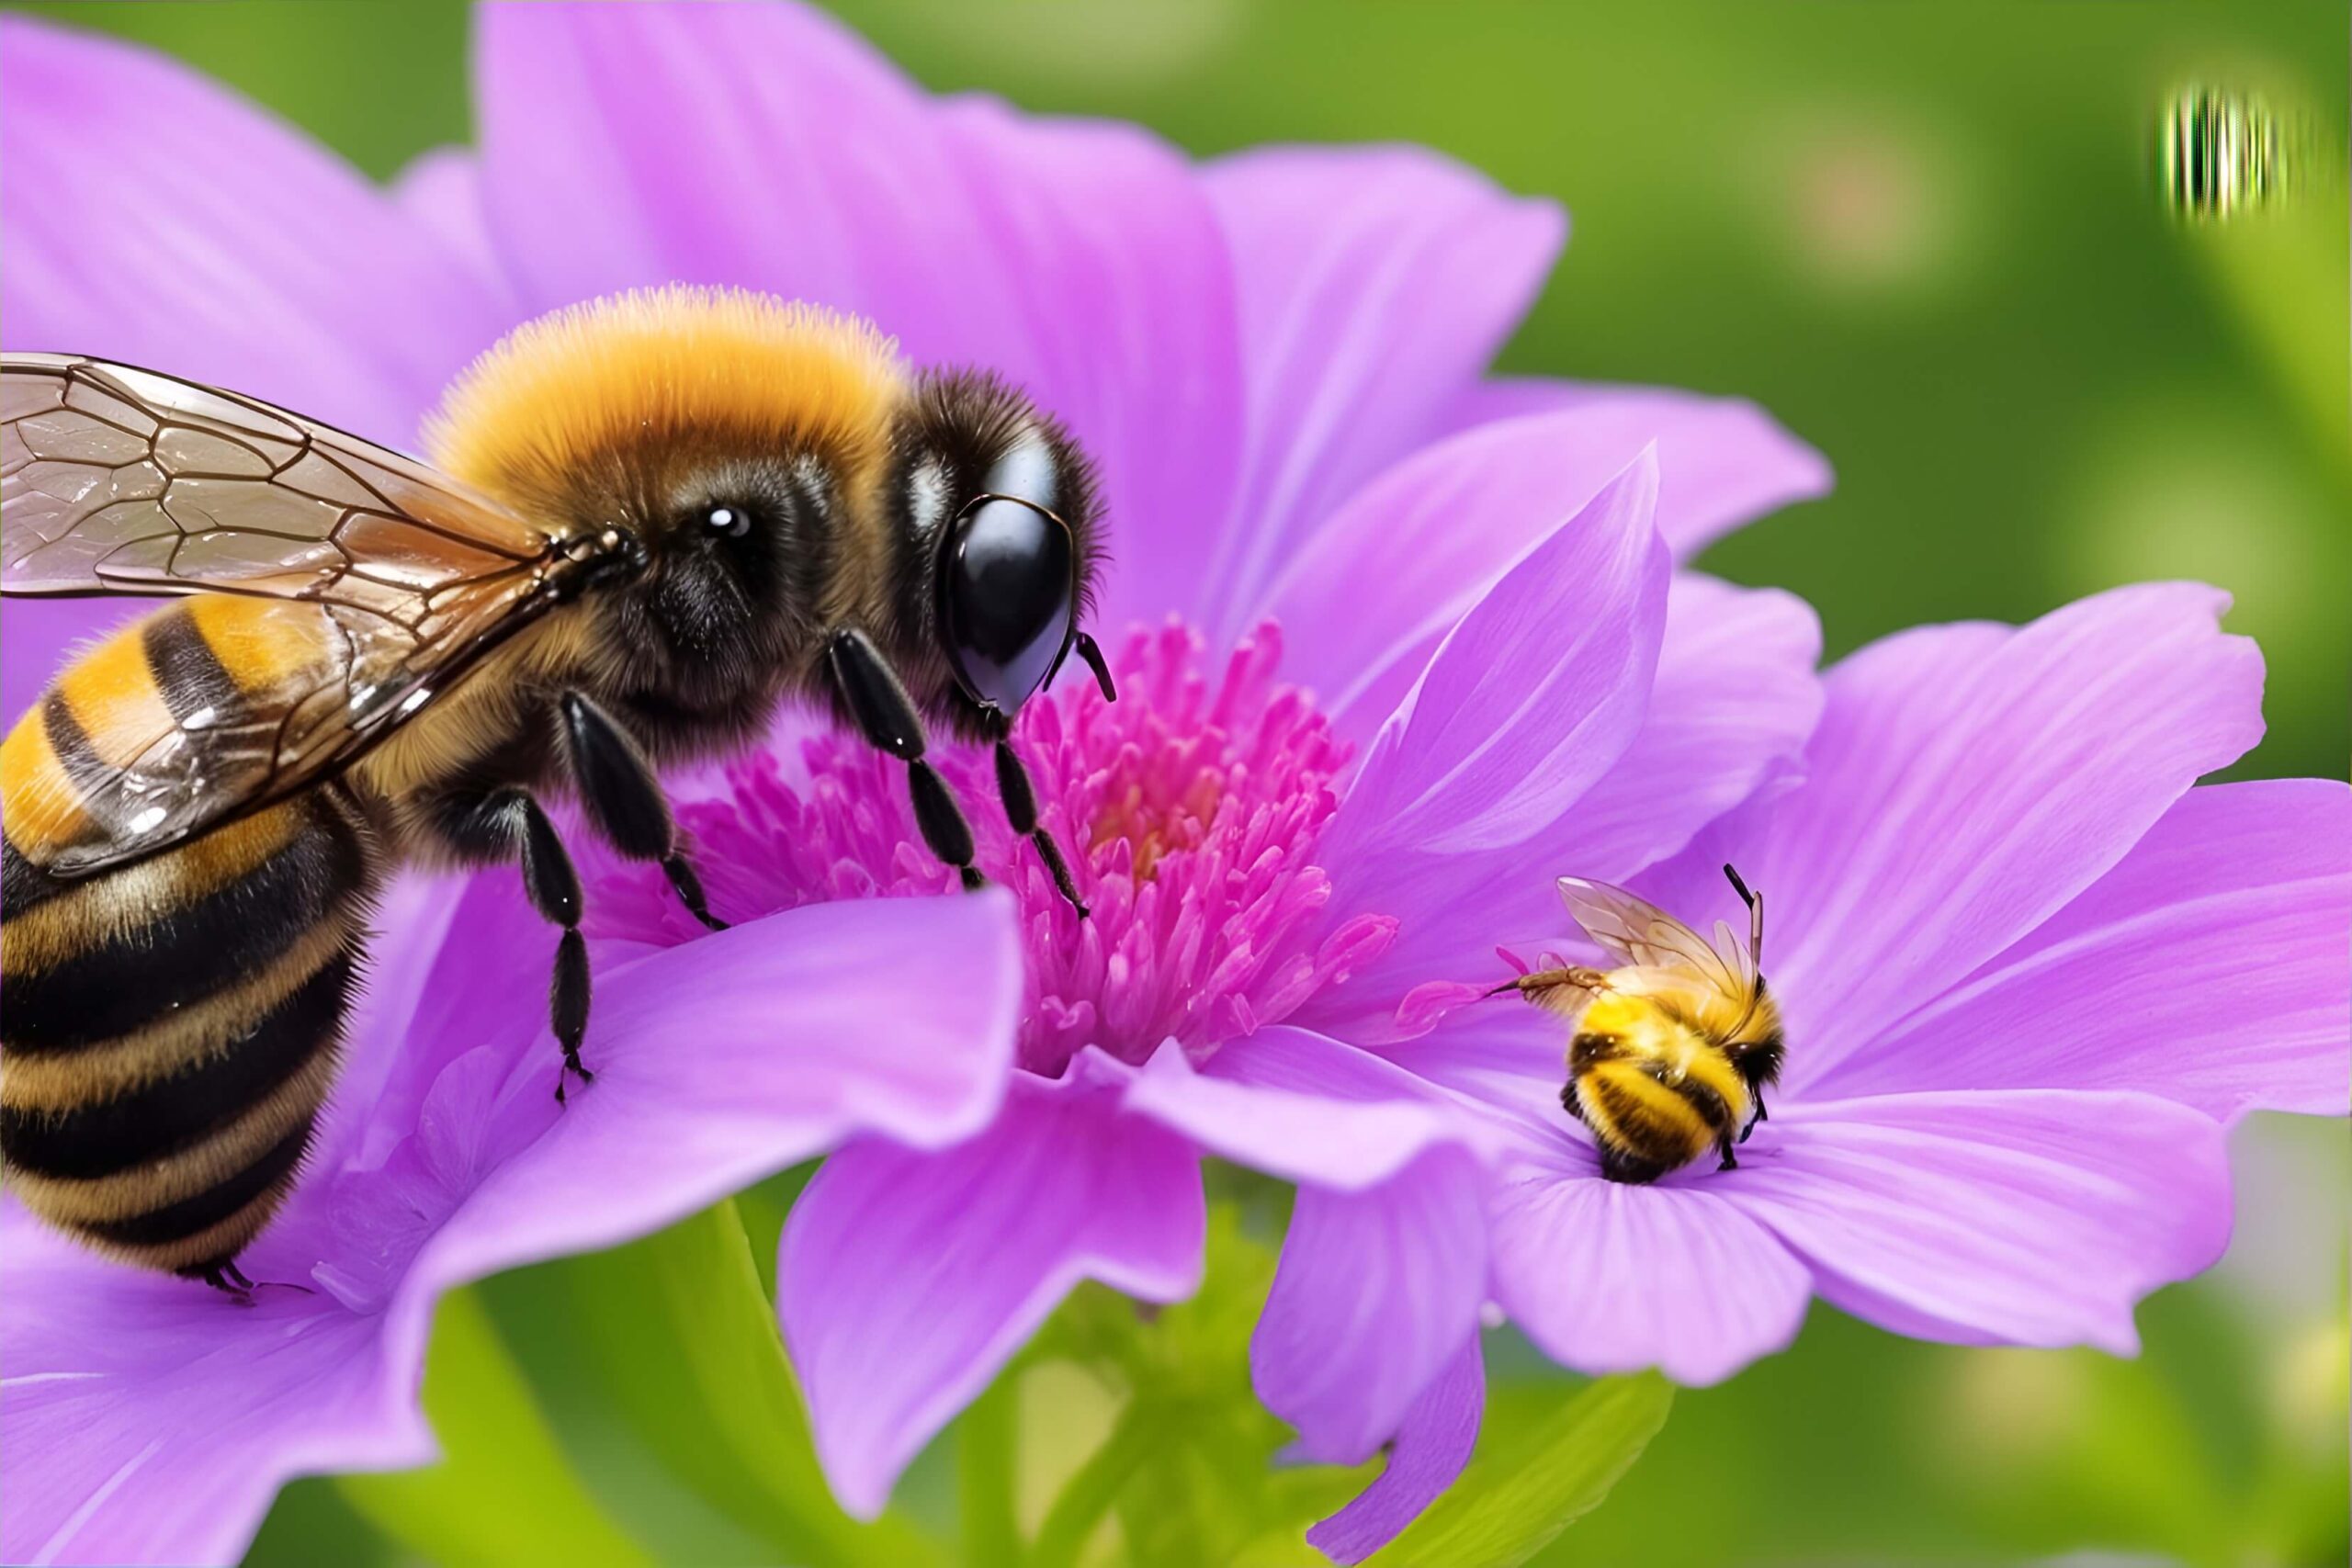  Bees in Garden
